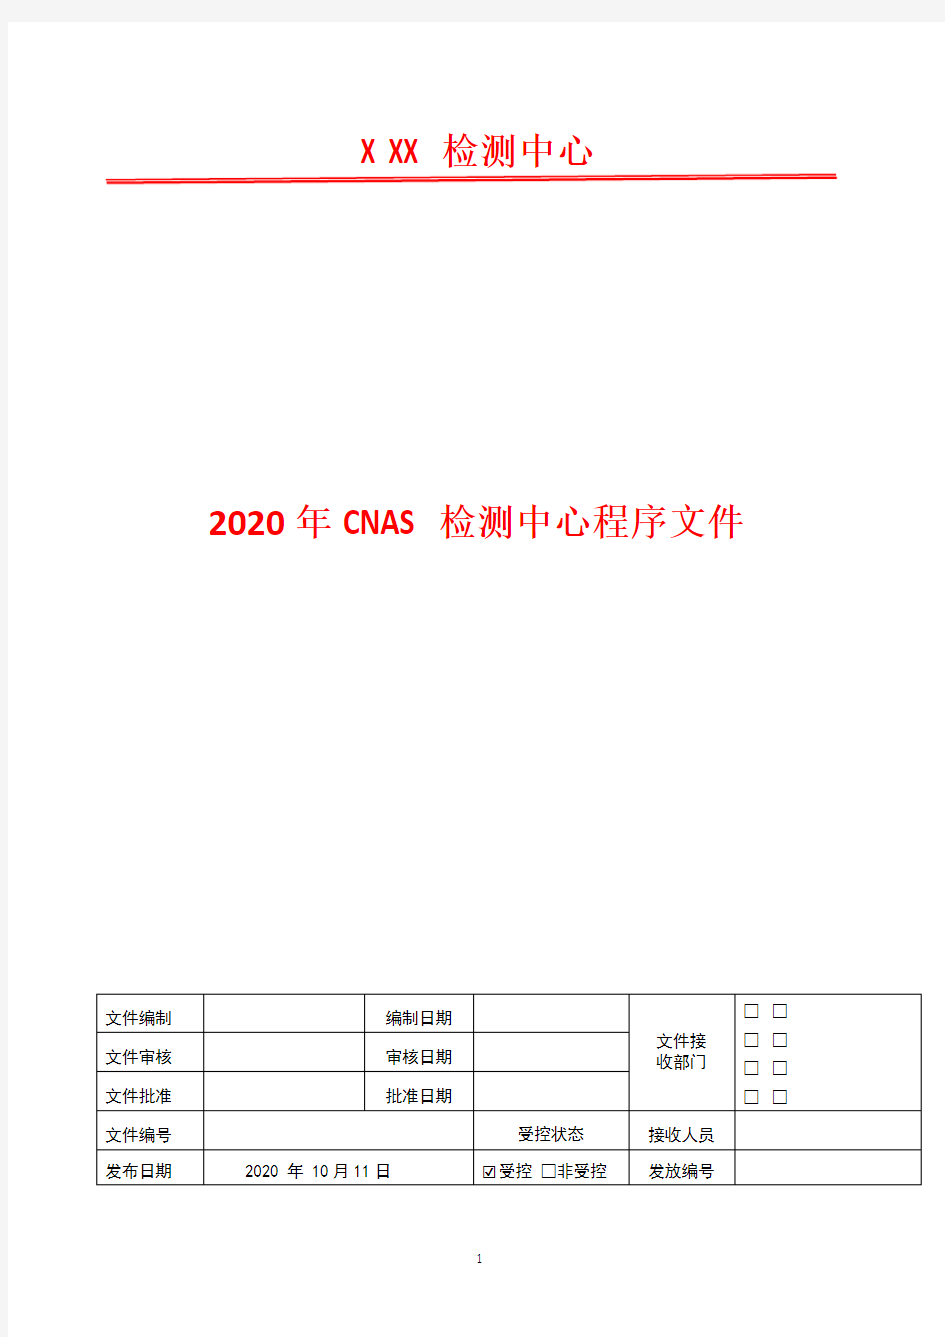 质量控制程序   2020年CNAS检测中心程序文件